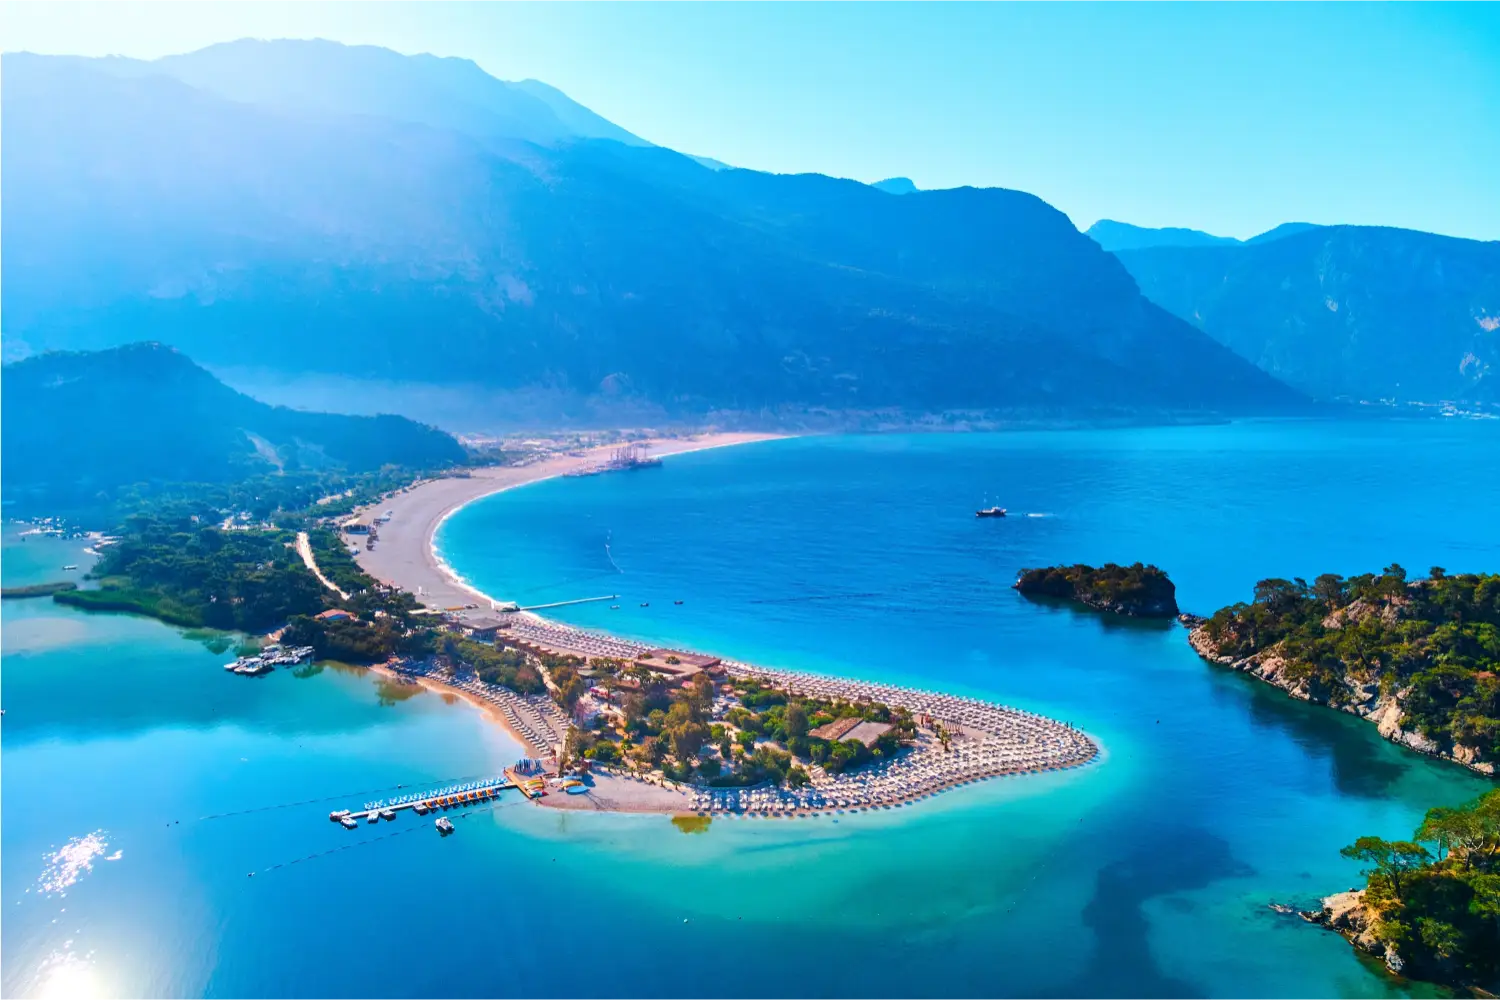 Splendid view of a seaside resort city in Turkey